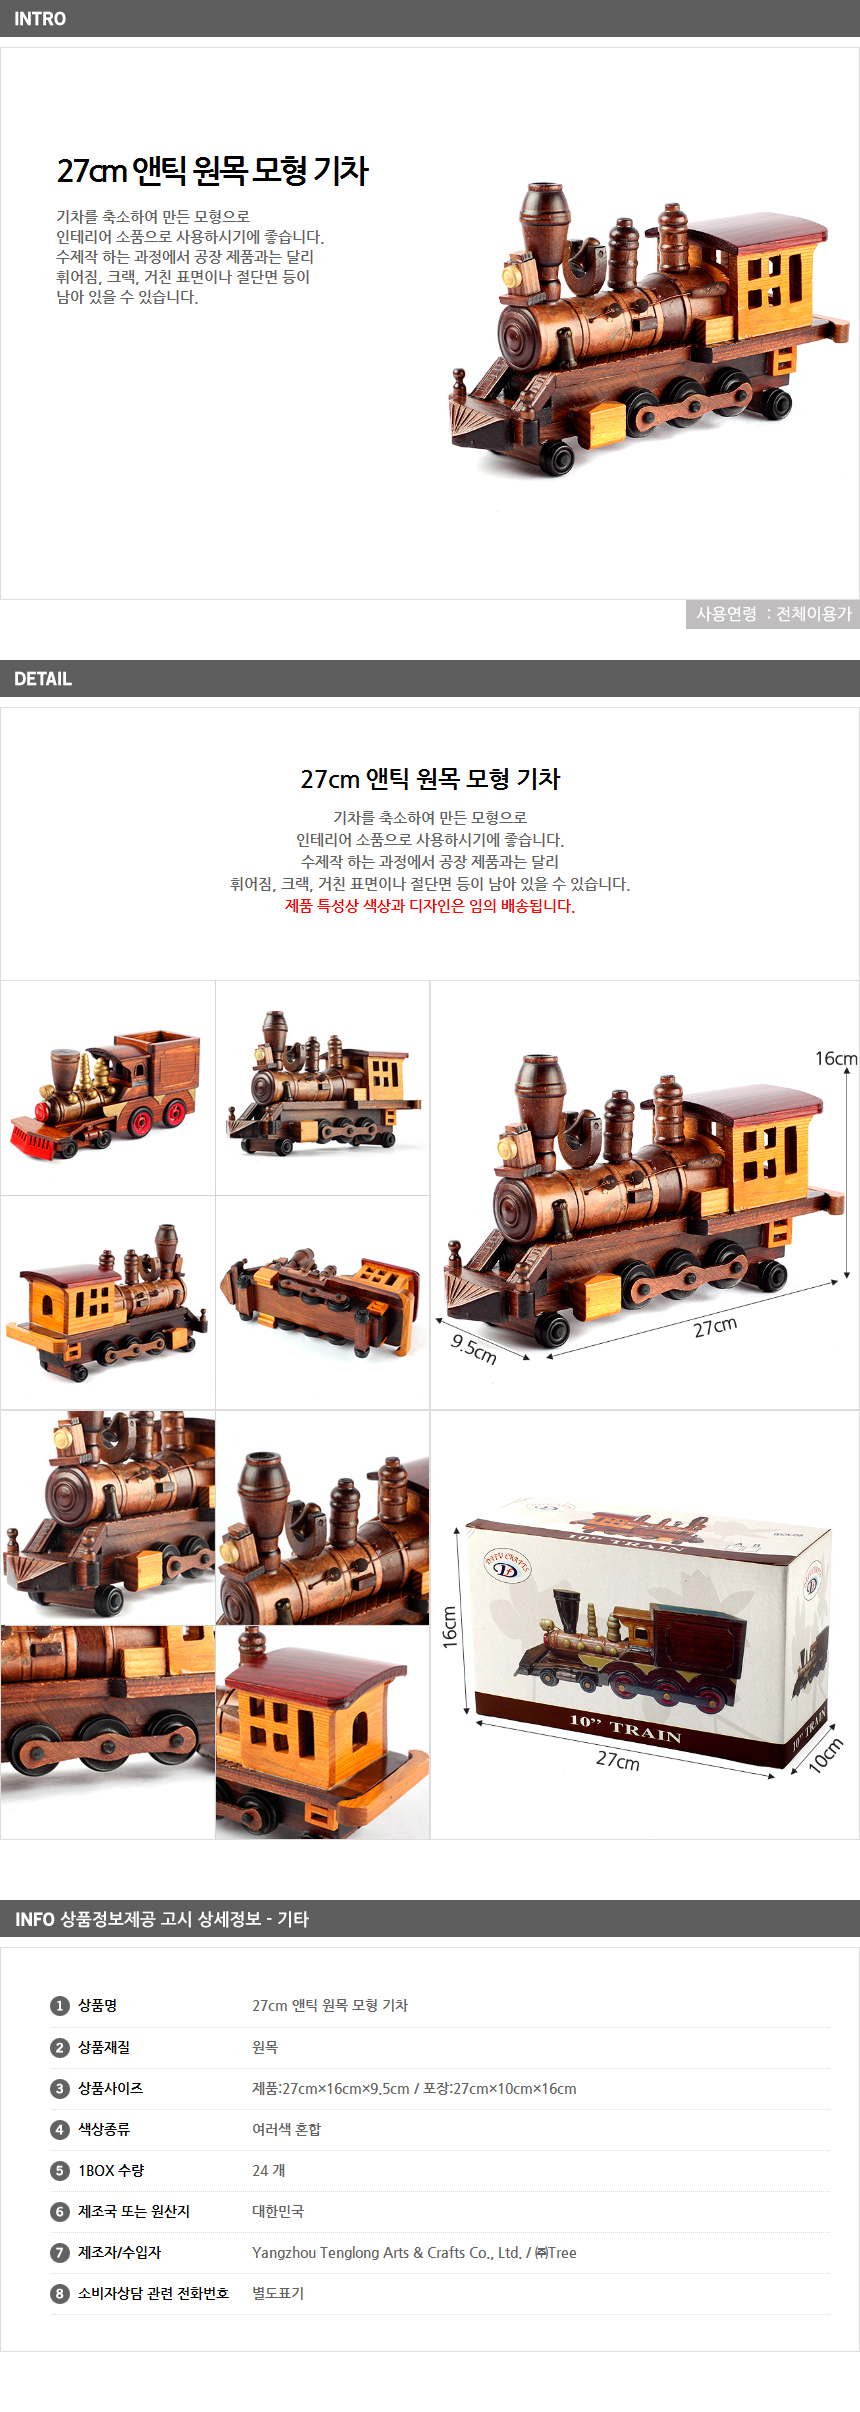 엔틱 원목 모형 기차 27cm/ 어린이집 유치원 장식소품